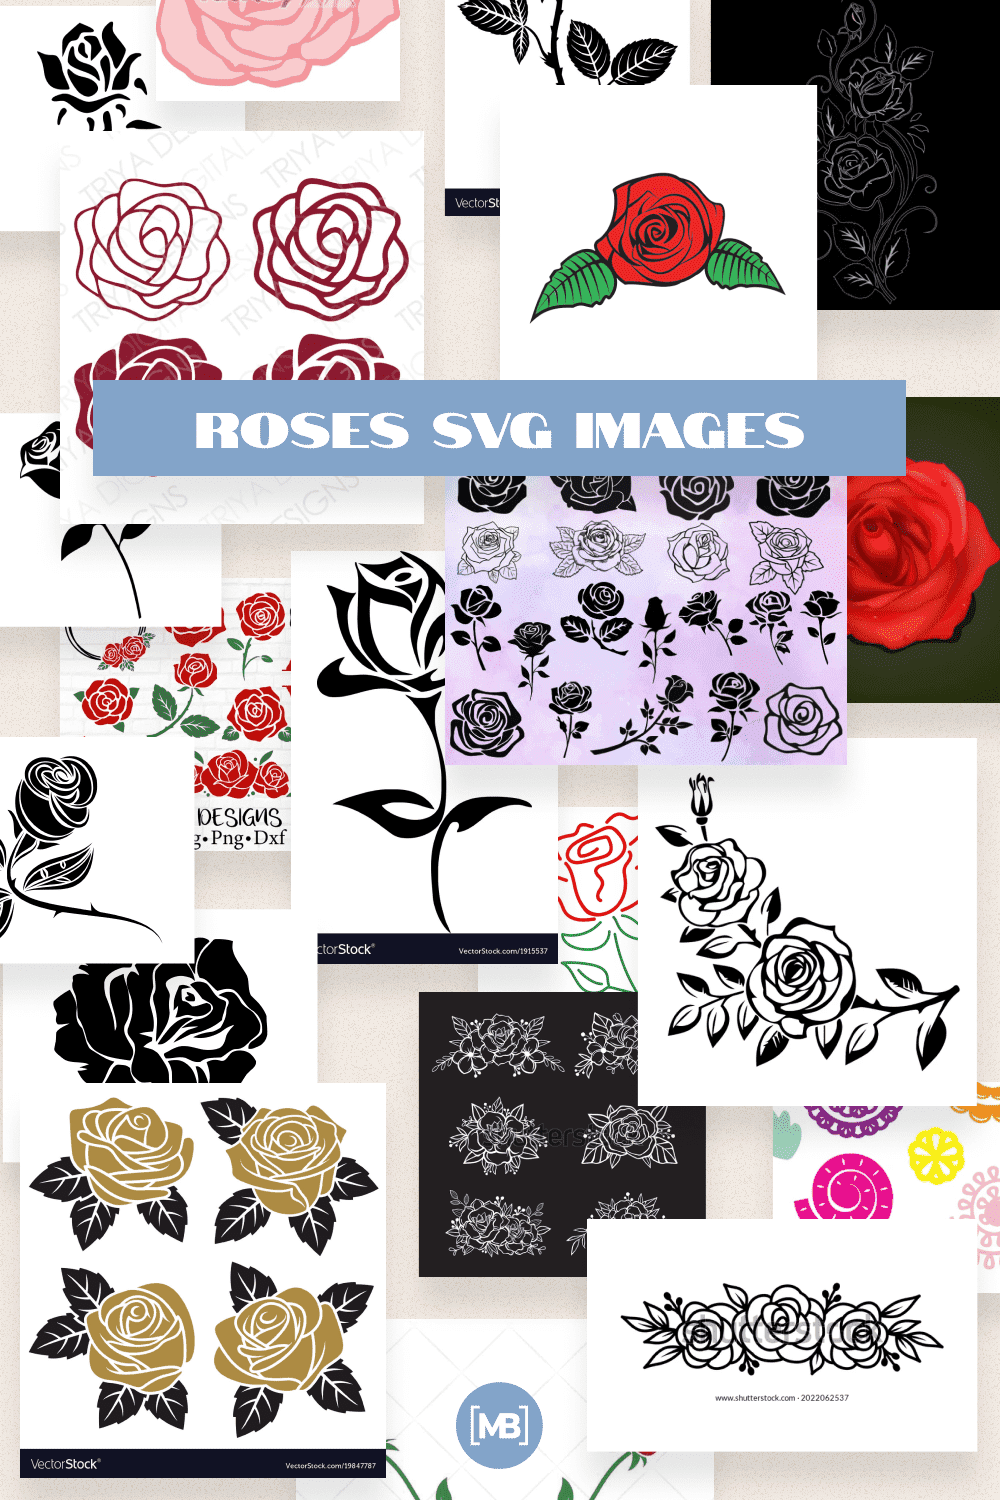 Roses SVG Images Pinterest.